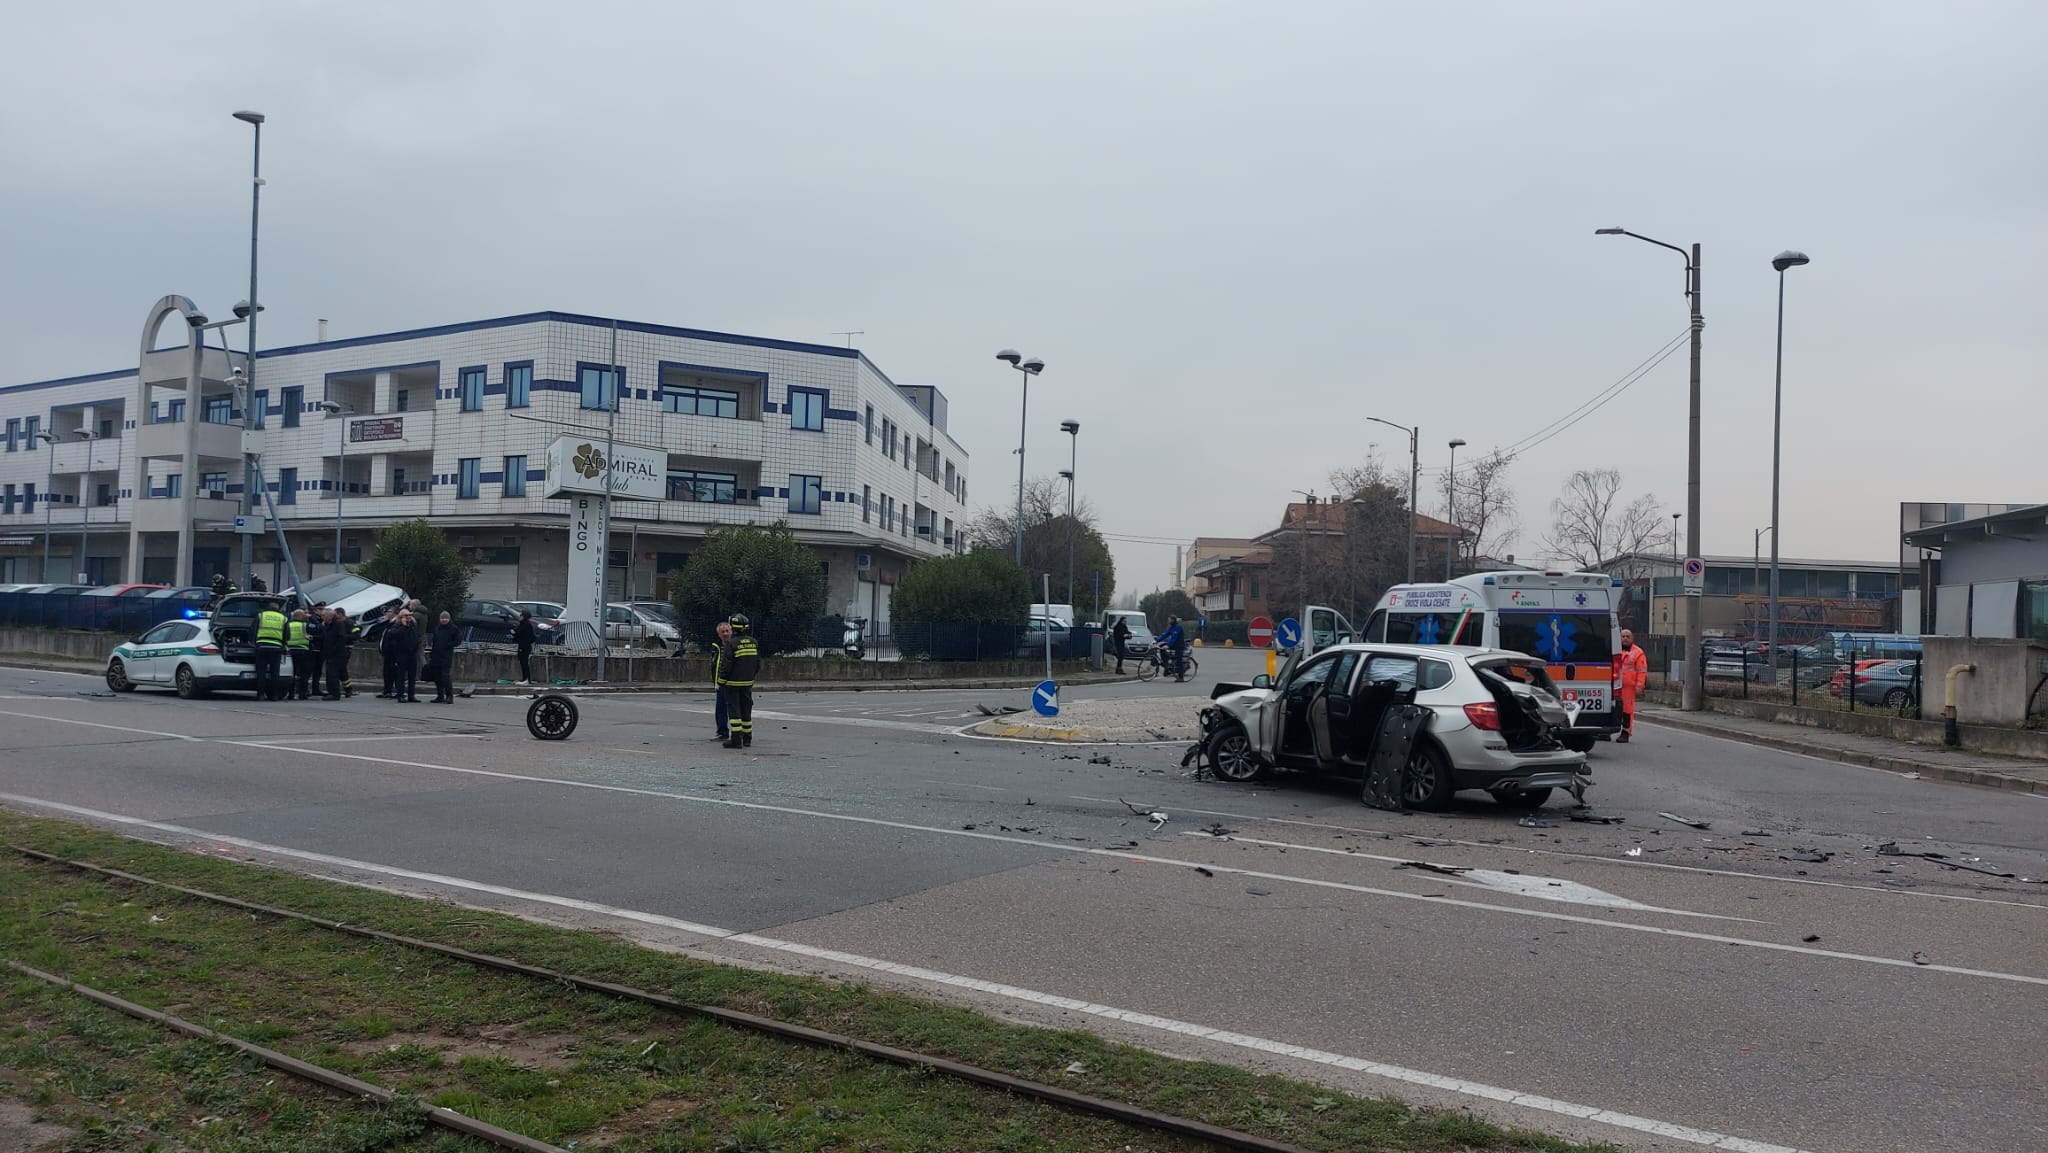 Nova milanese incidente auto sfonda recinzione